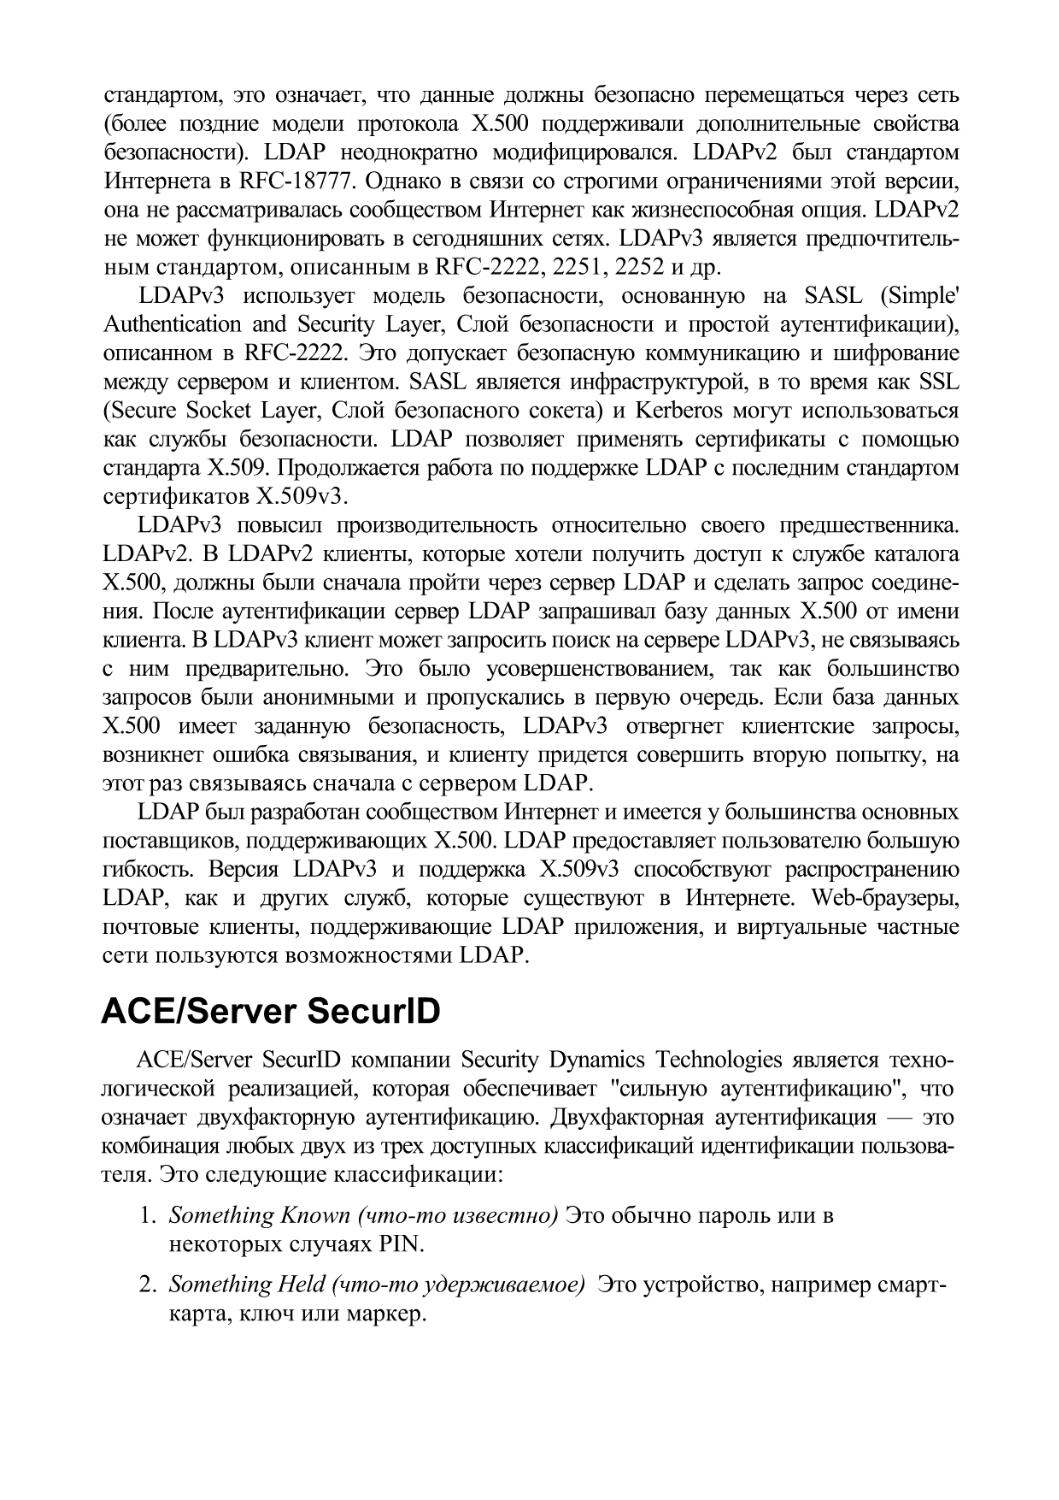 ACE/Server SecurlD